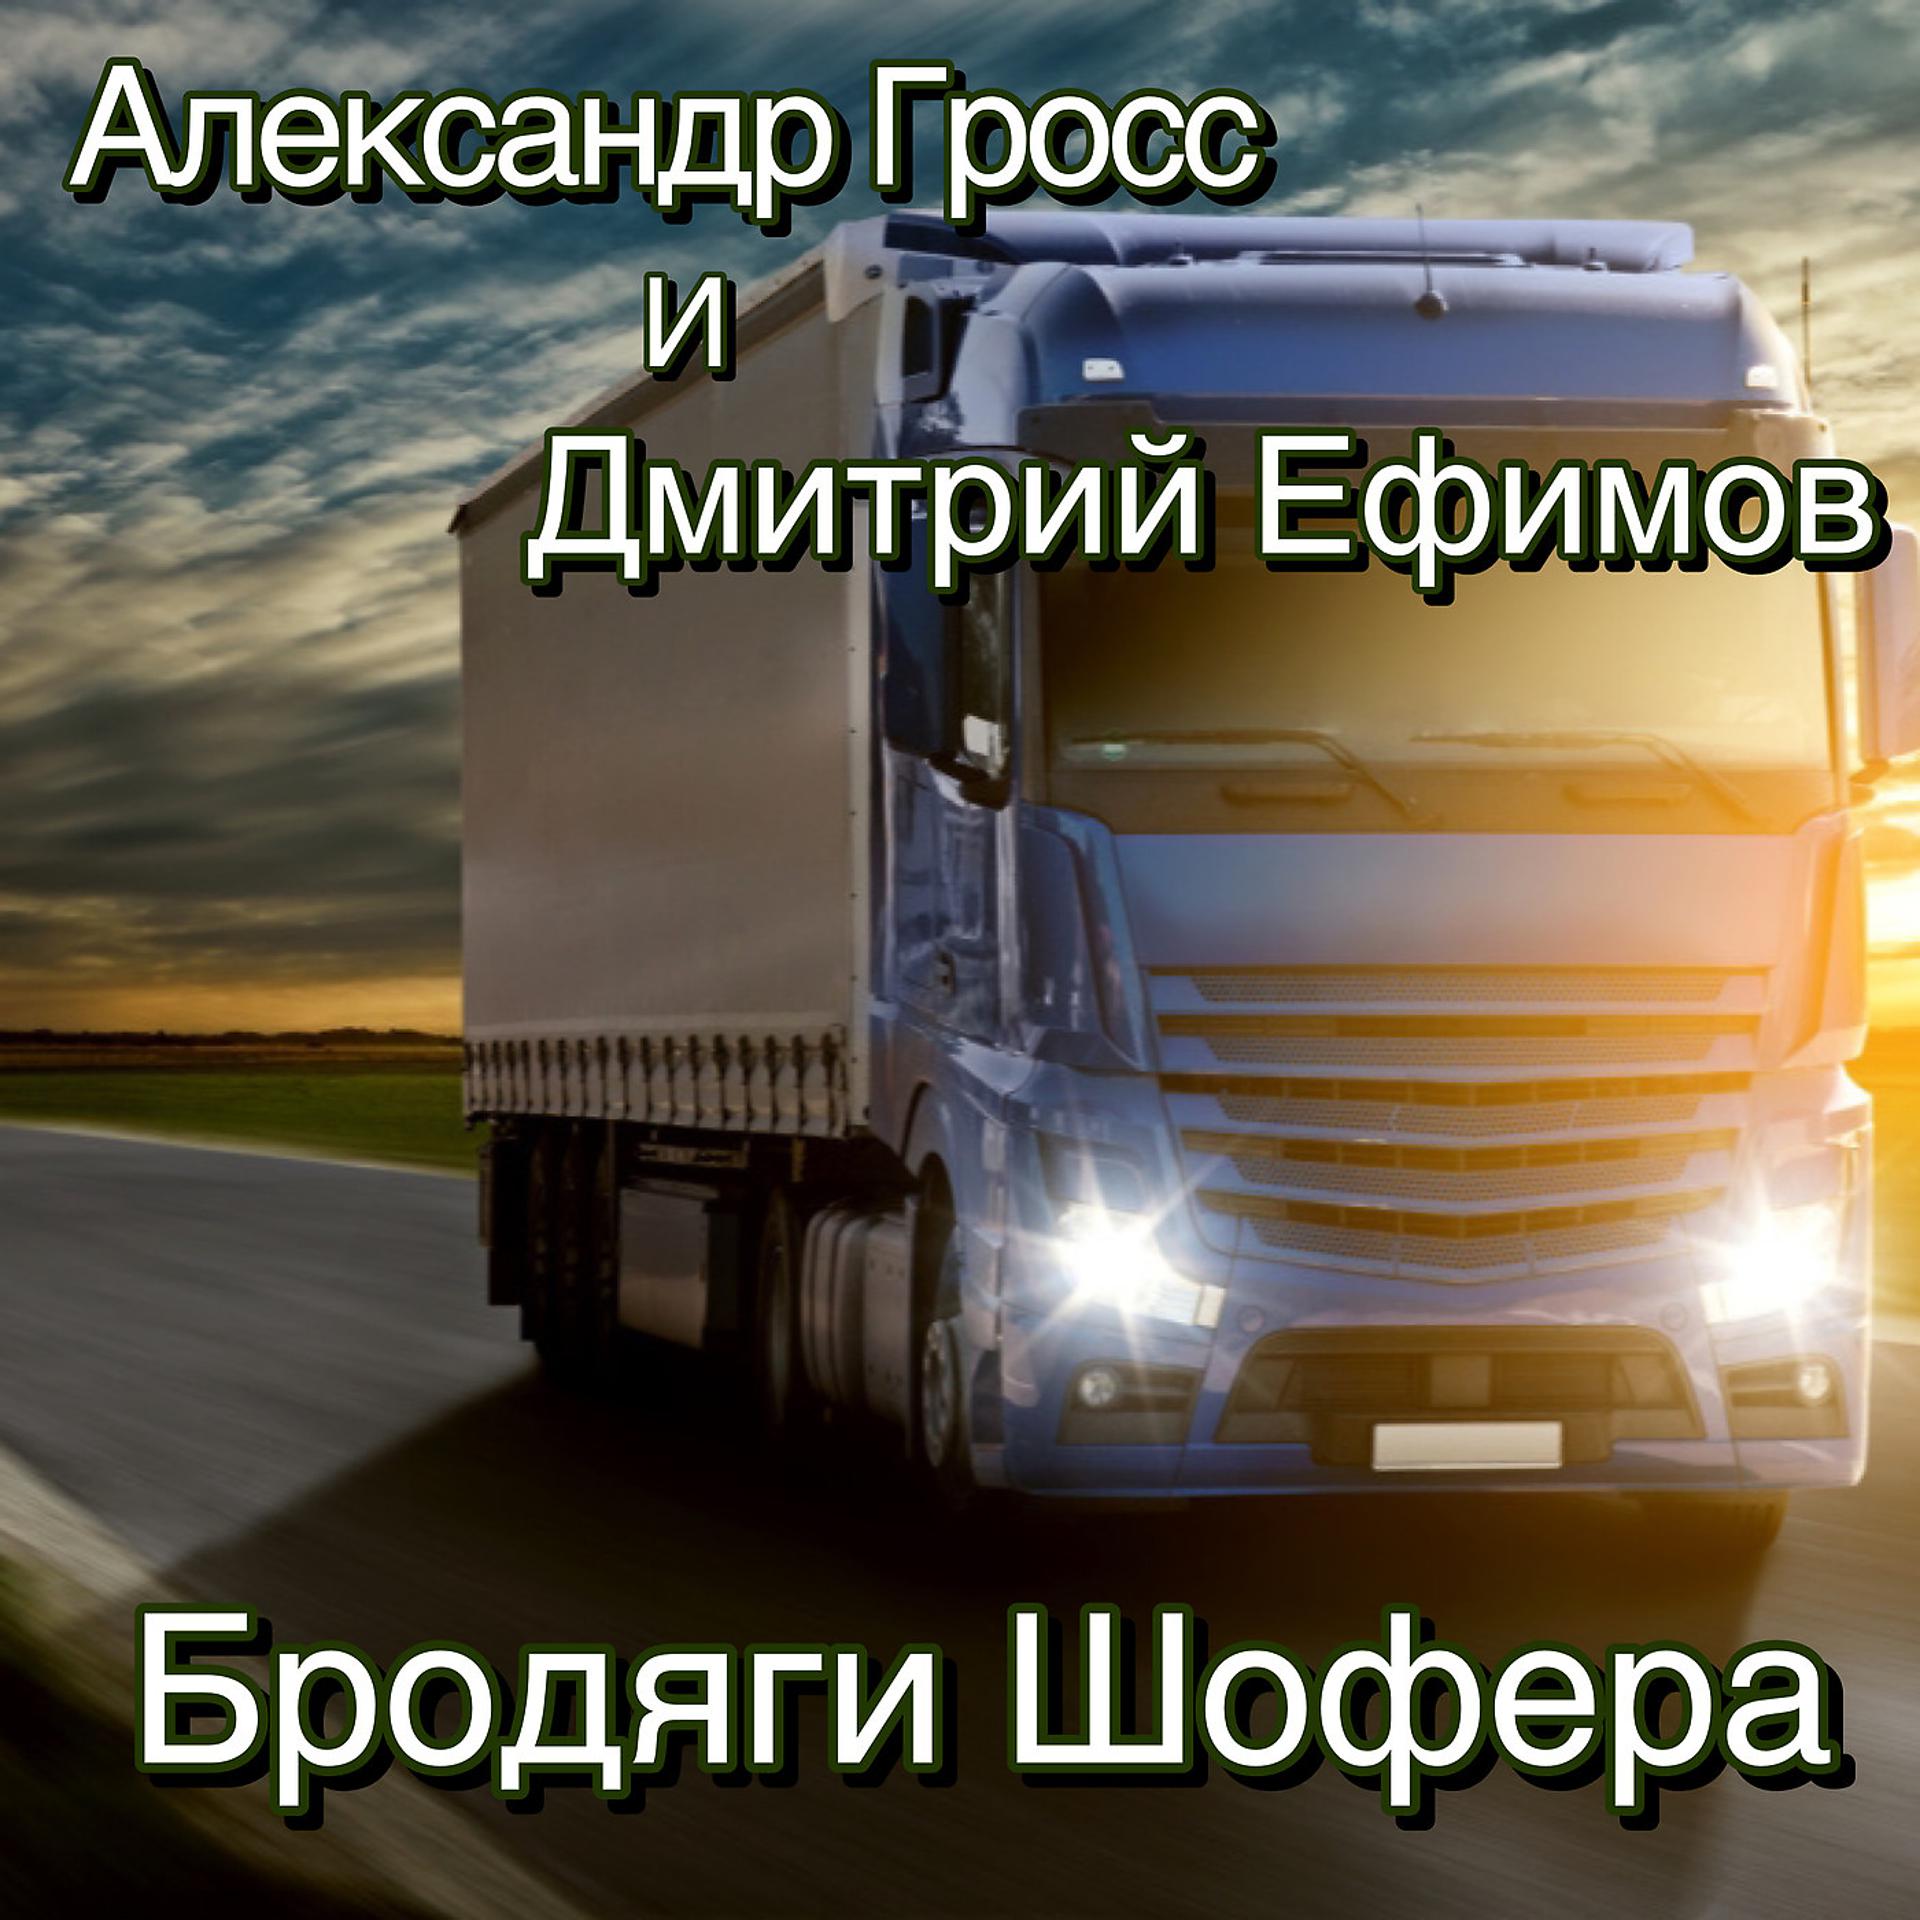 Постер к треку Александр Гросс и Дмитрий Ефимов - Бродяги Шофера